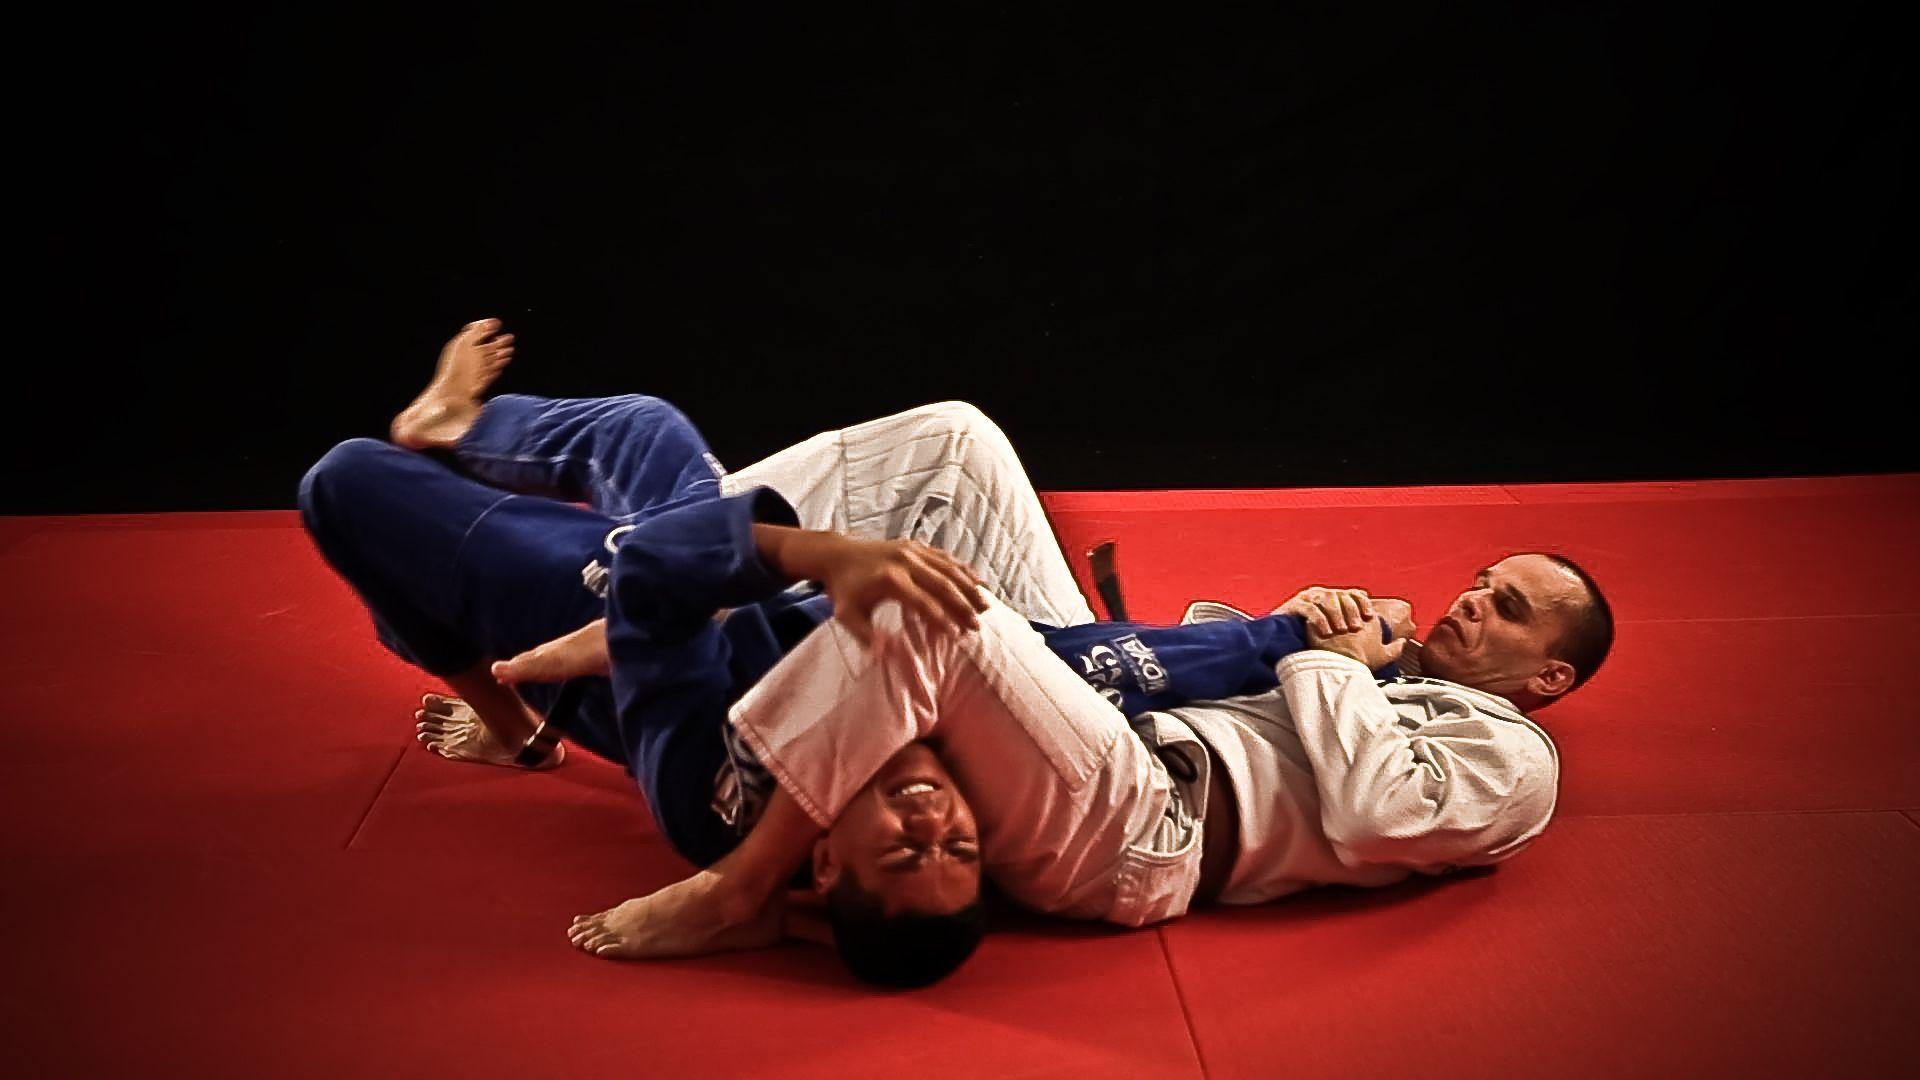 Best Image About Brazilian Jiu Jitsu. Before